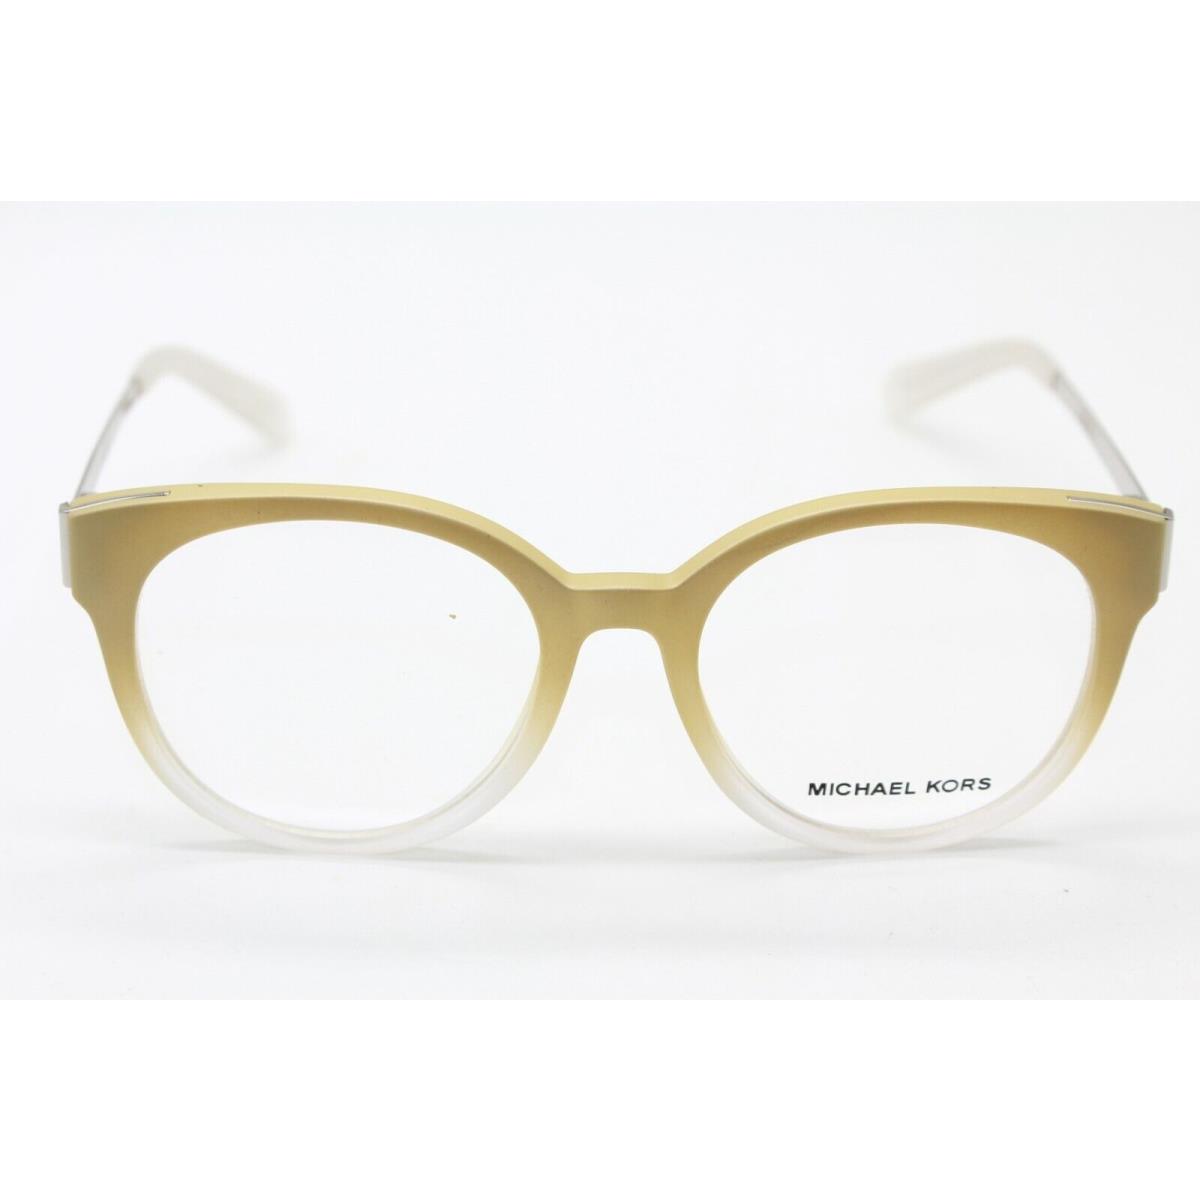 Michael Kors eyeglasses  - BEIGE Frame 0